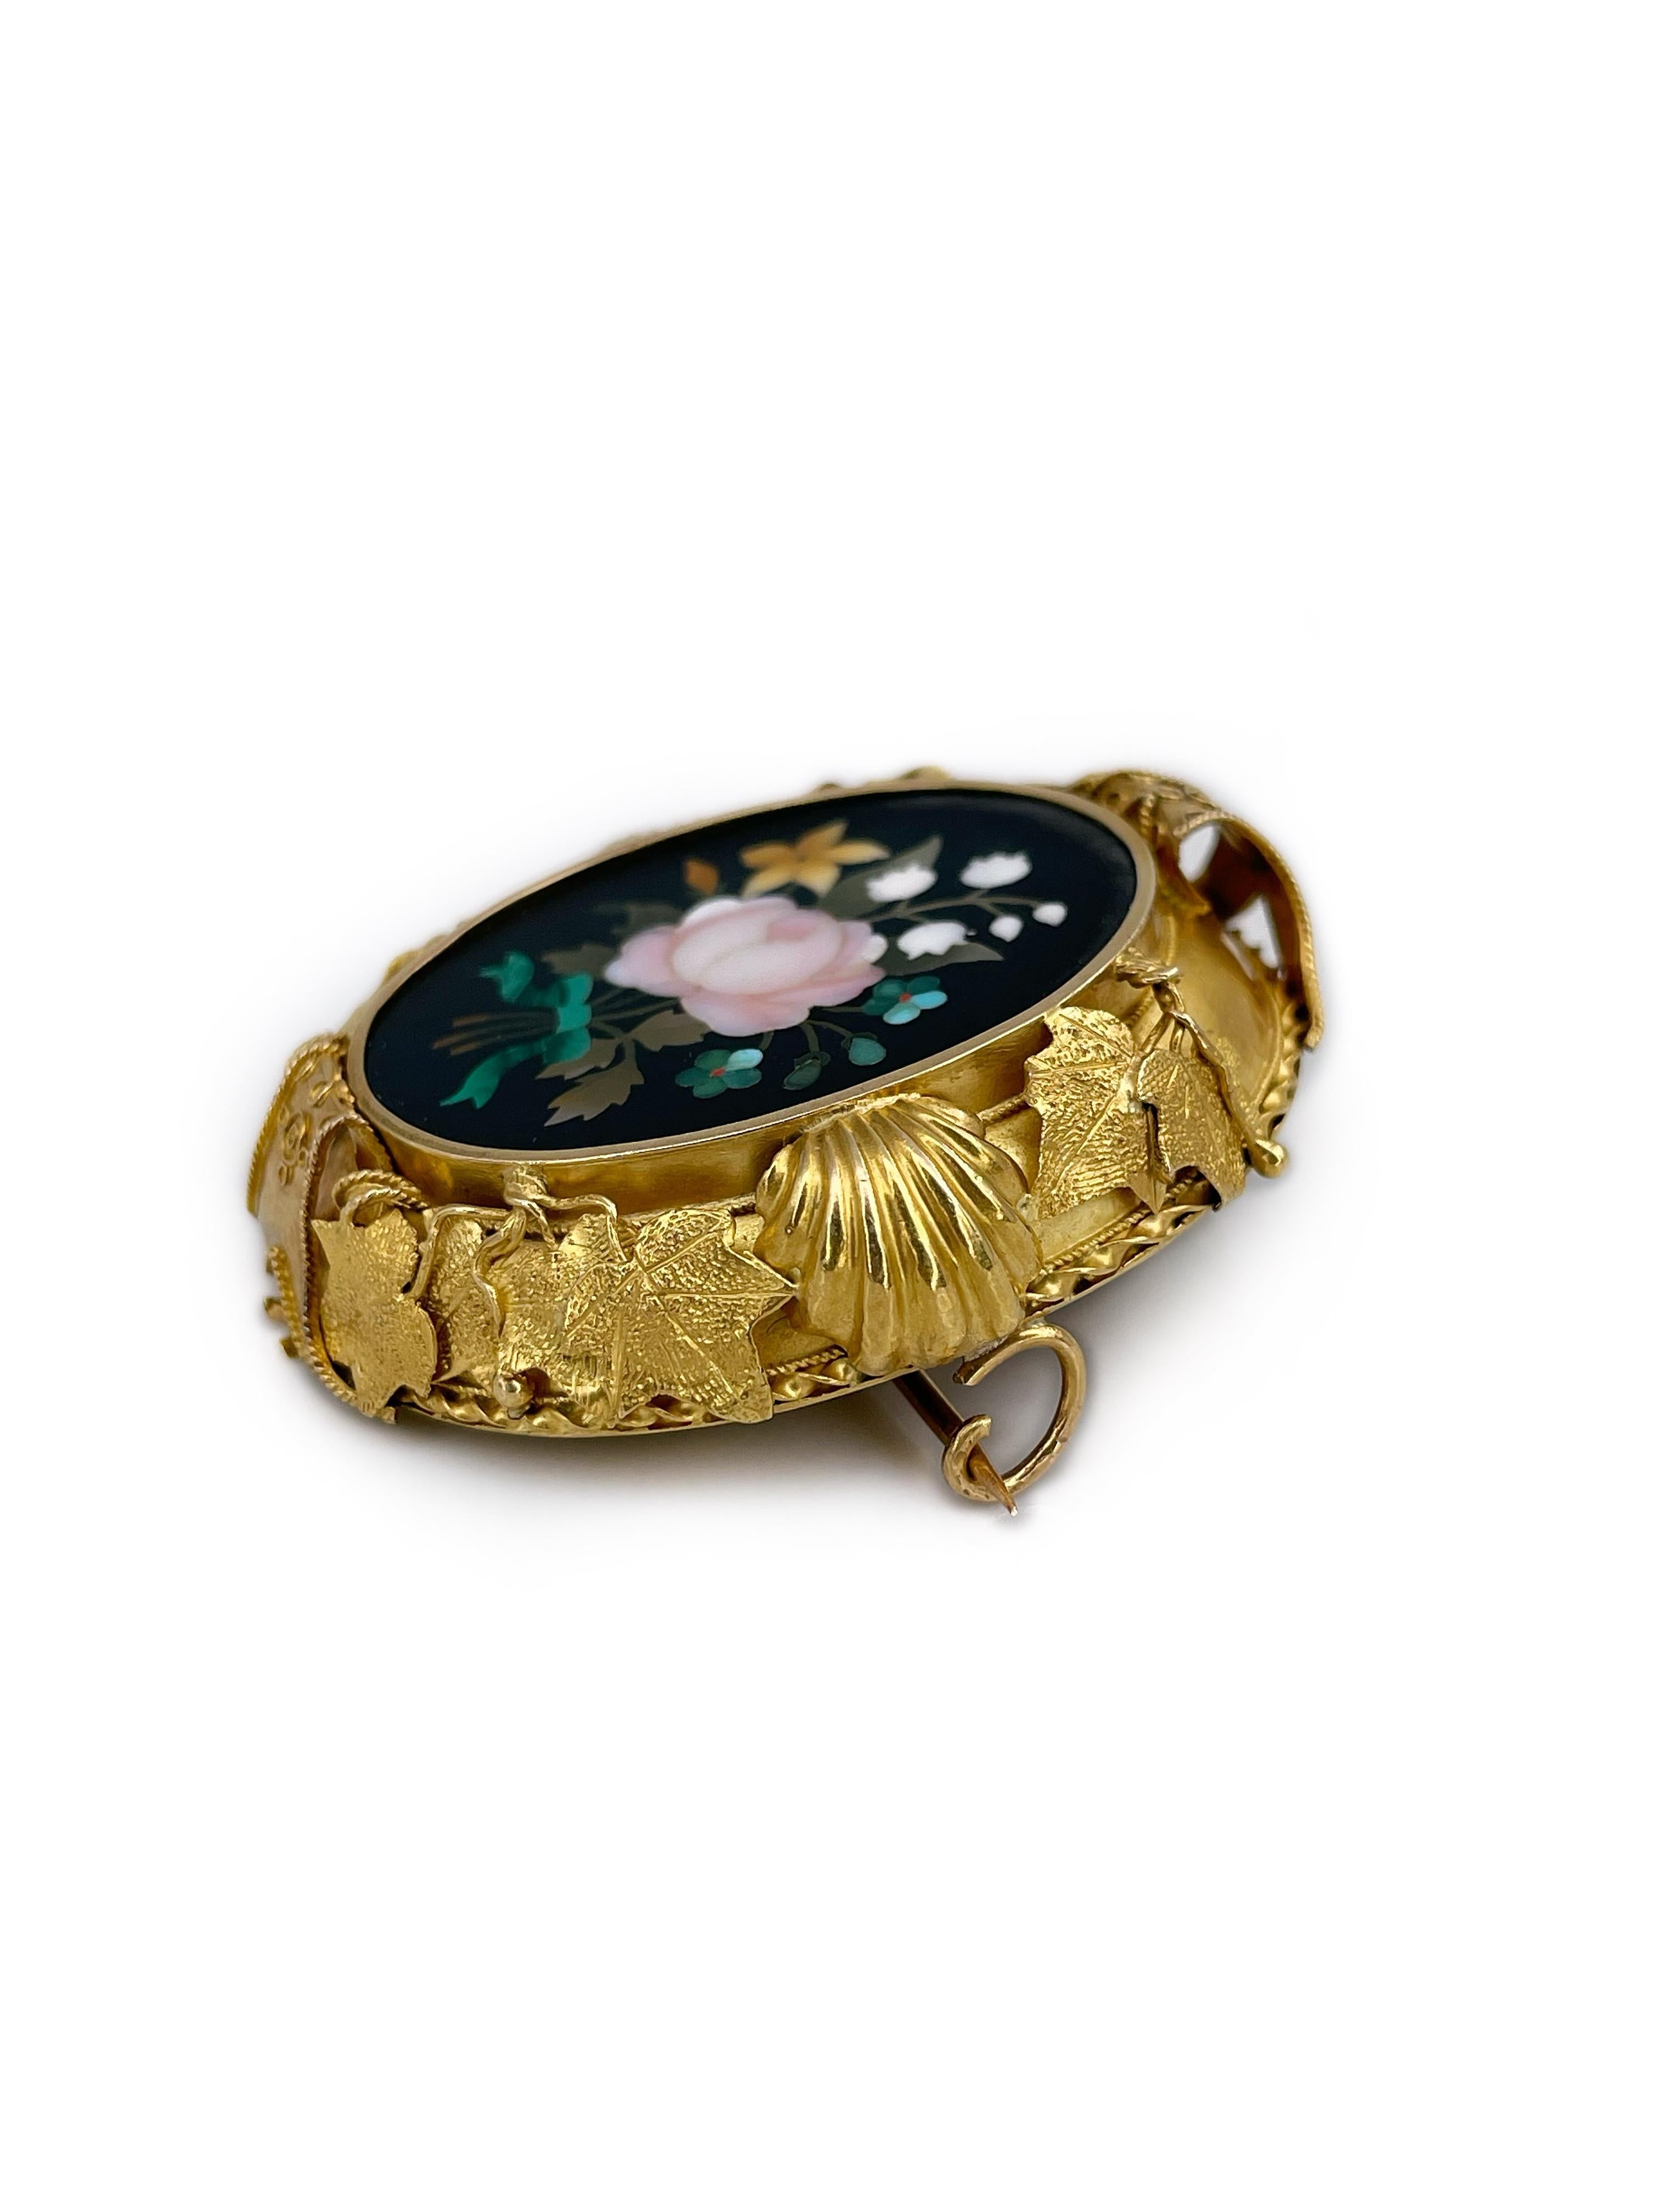 Il s'agit d'une belle broche victorienne ovale en mosaïque florale réalisée en or 18 carats. La pièce comporte des pierres semi-précieuses taillées et incrustées selon la technique de la mosaïque Pietra dura. 

Le cadre est très décoratif.